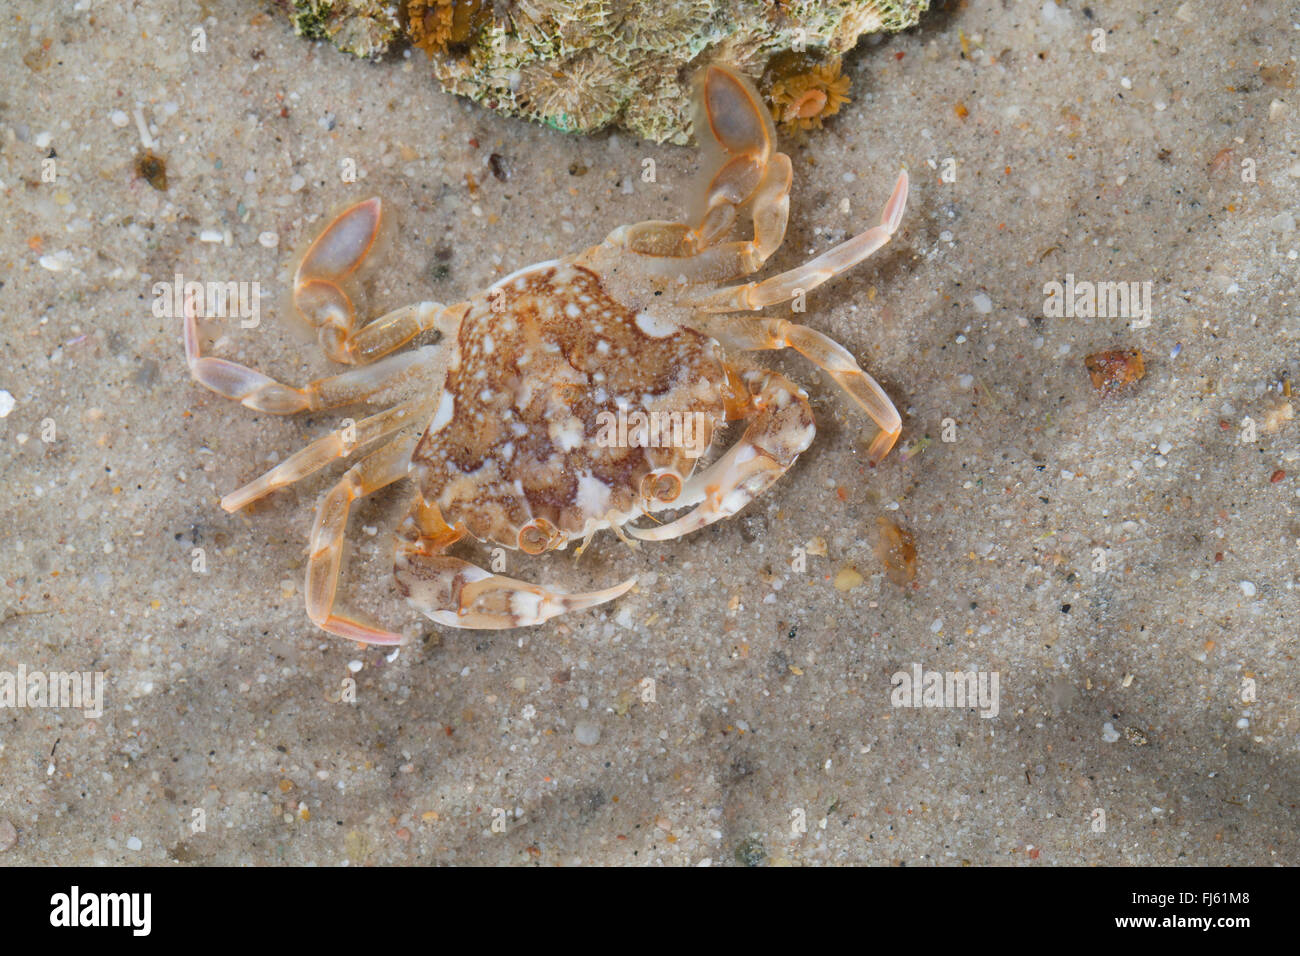 marbled swimming crab (Liocarcinus marmoreus, Portunus marmoreus), on sea bottom Stock Photo